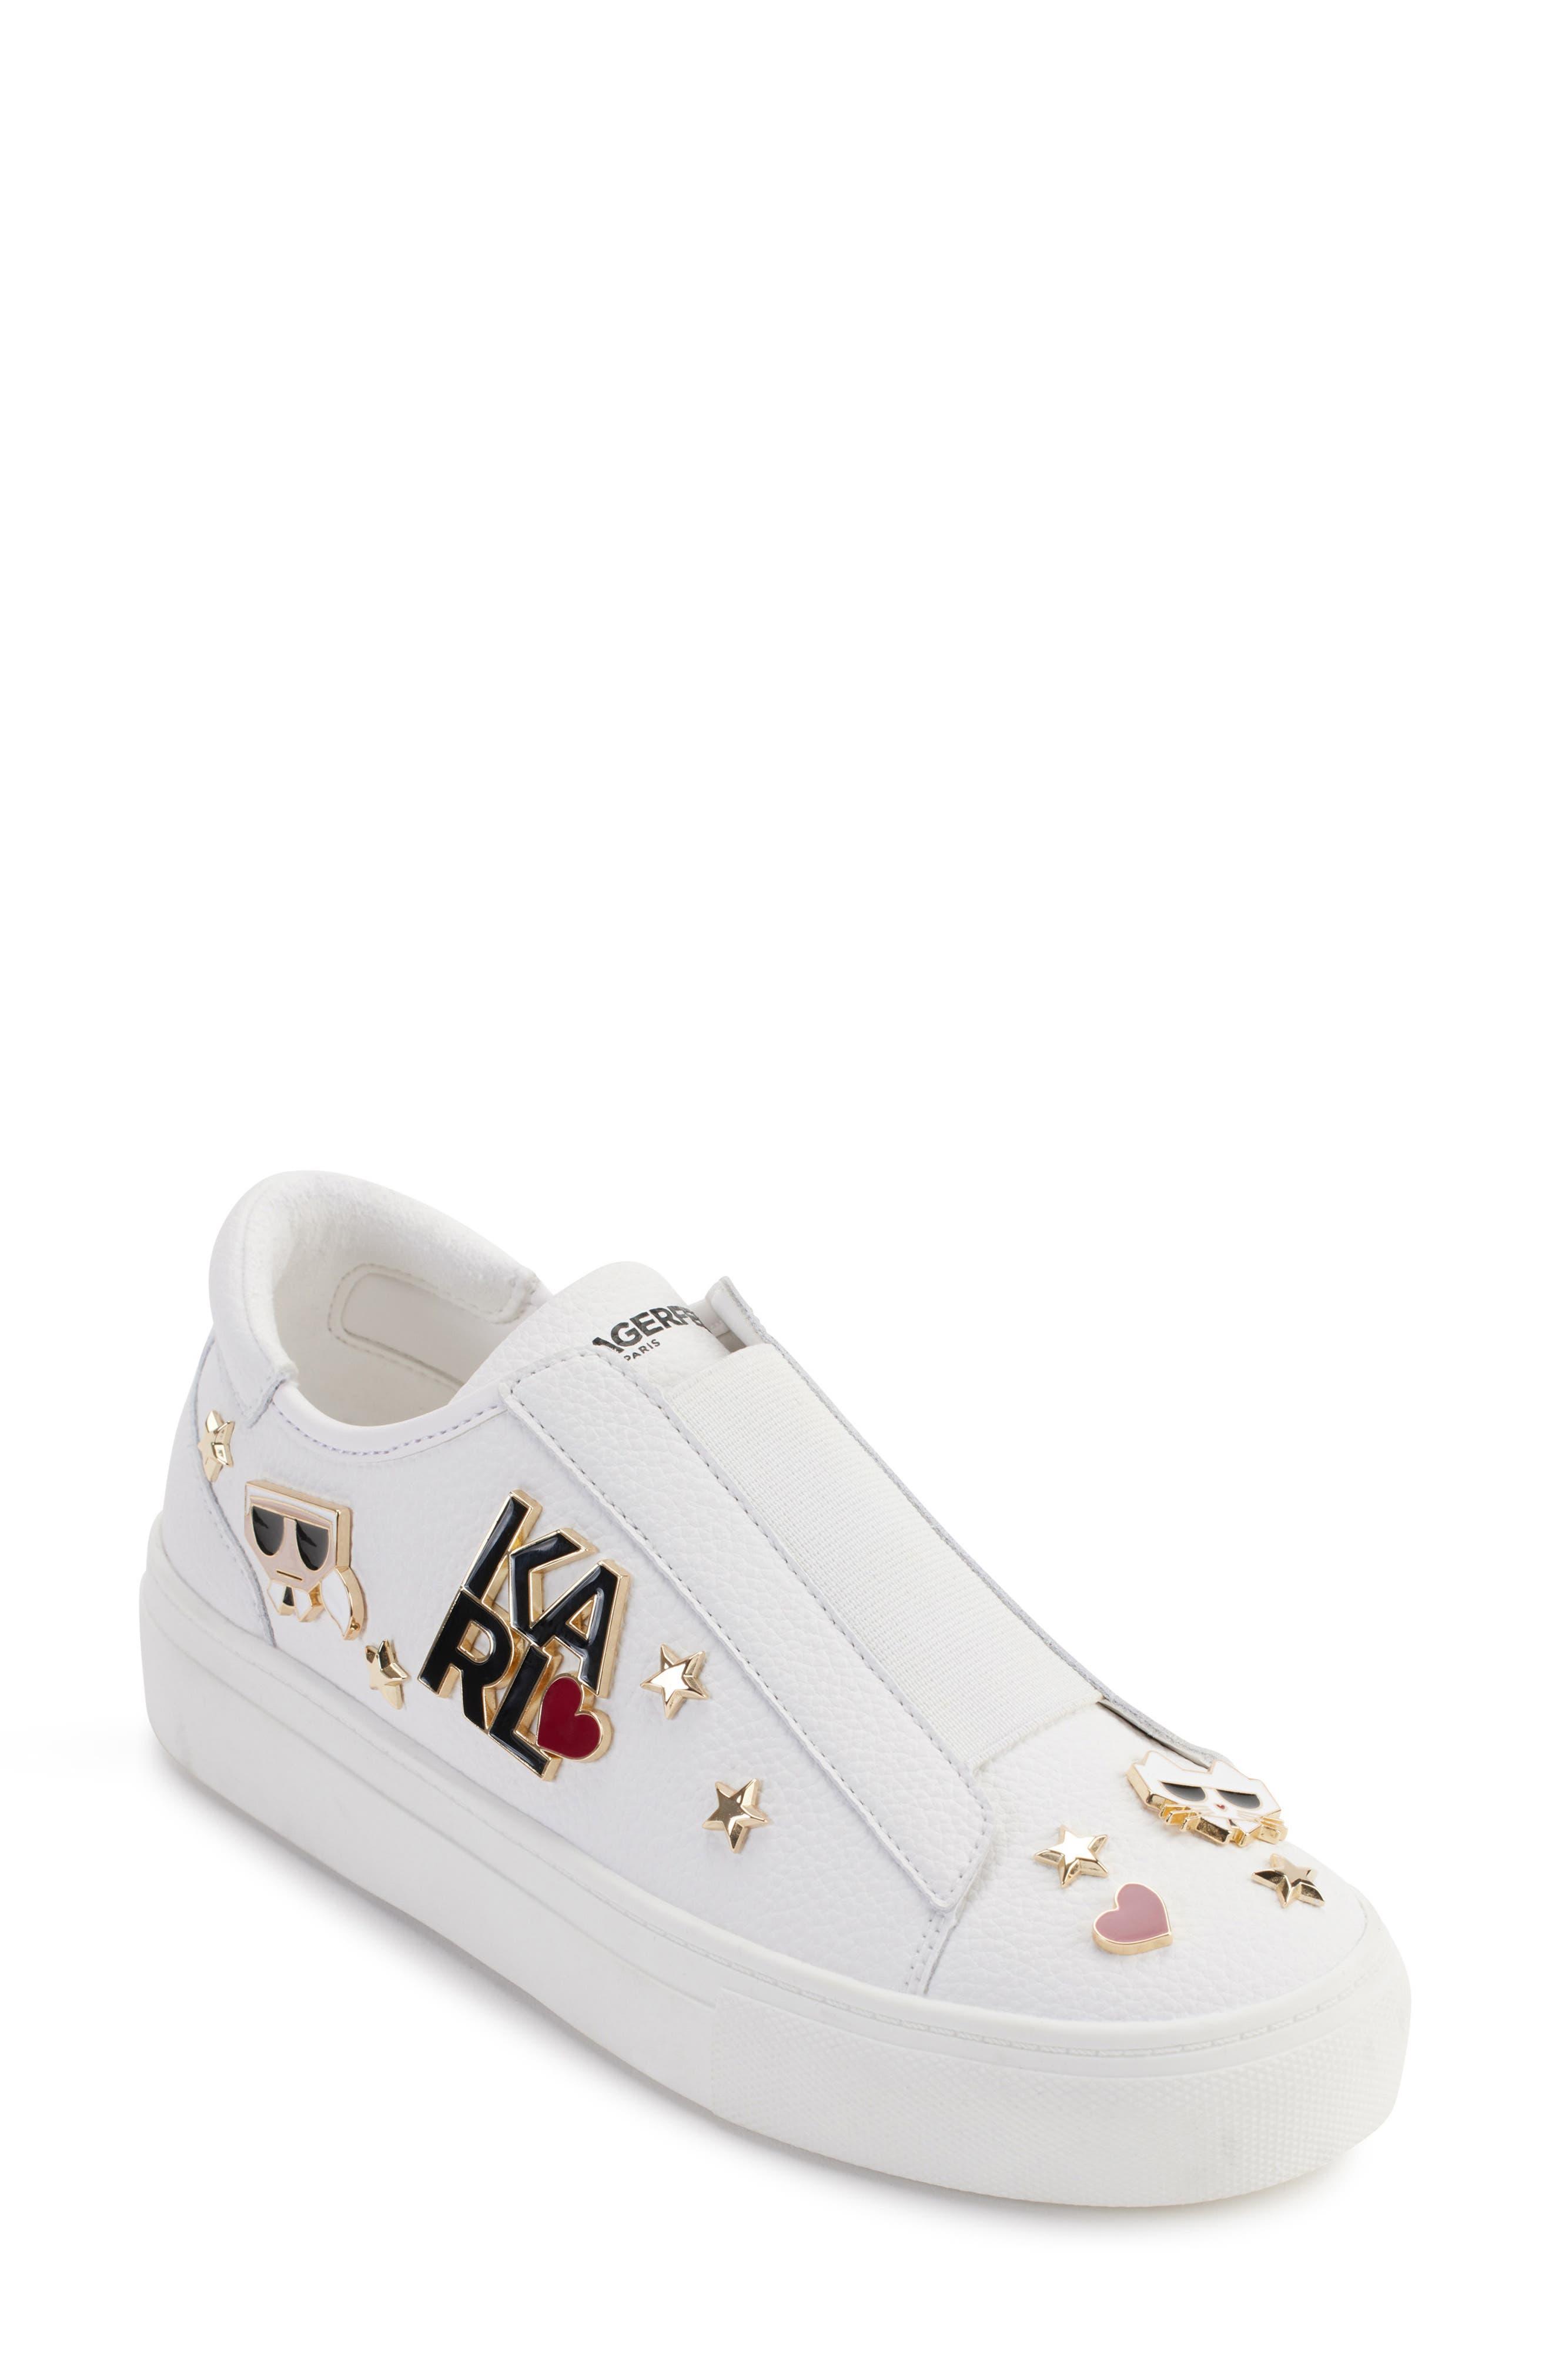 Karl Lagerfeld Caitie Slip-on Sneaker in White | Lyst